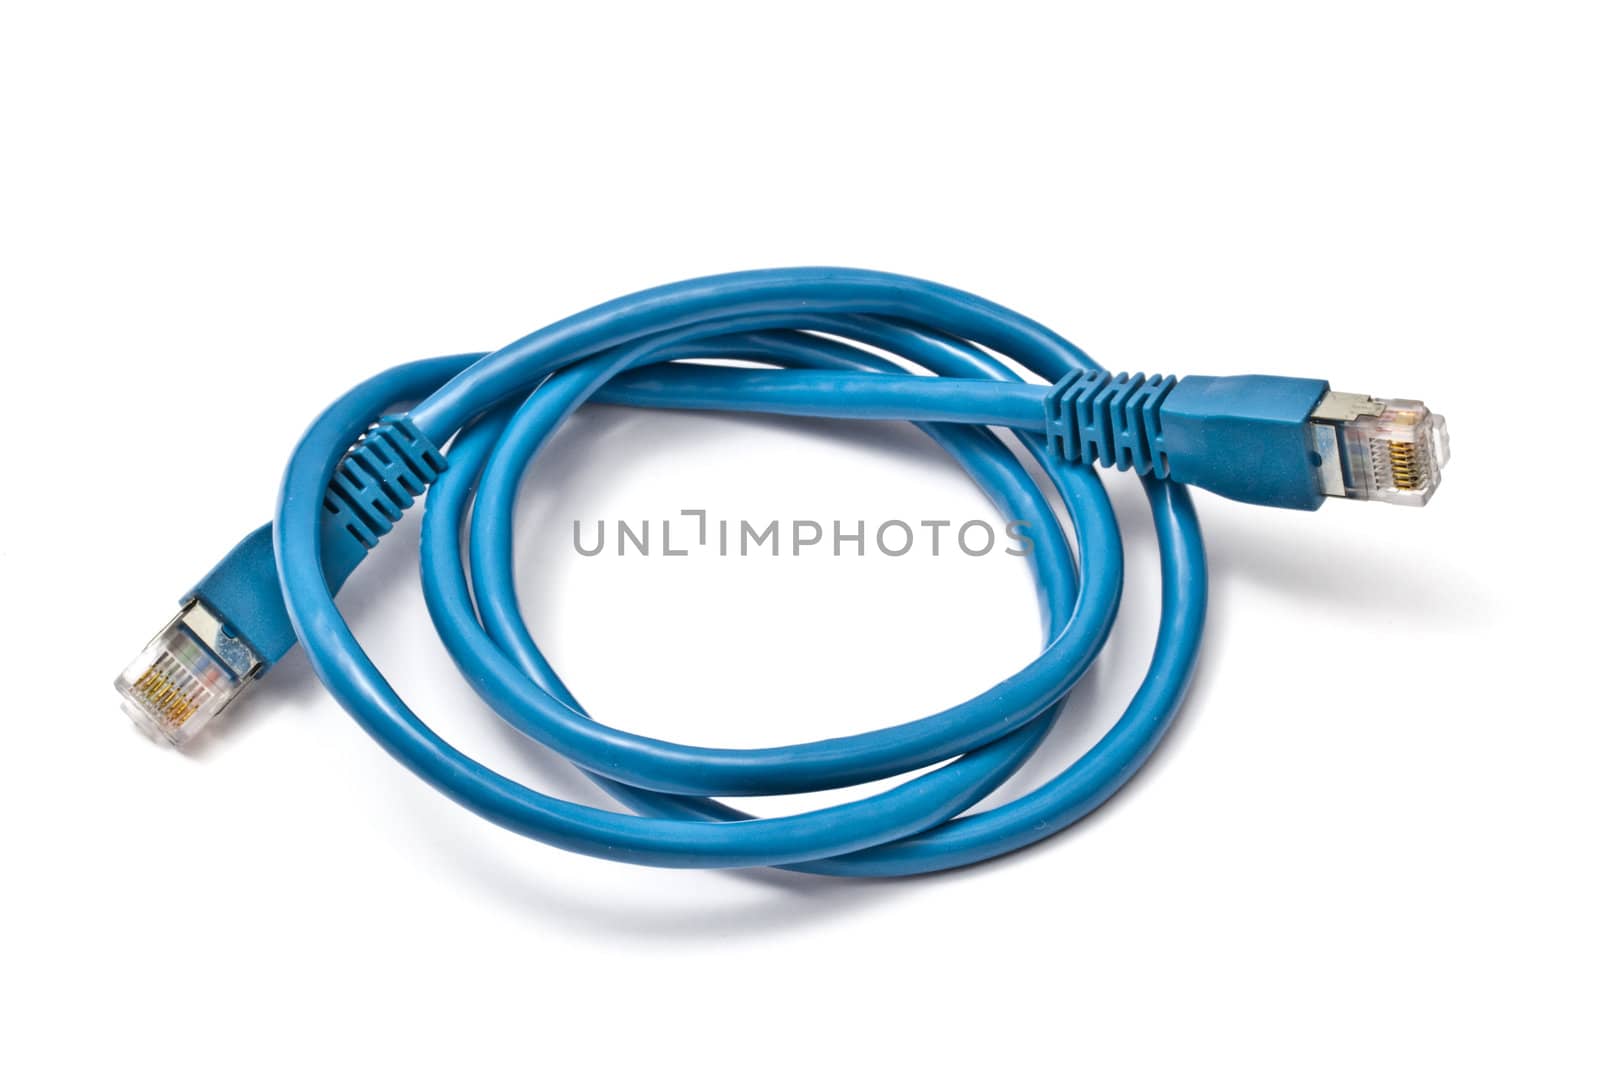 Blue network plug isolated on white background
